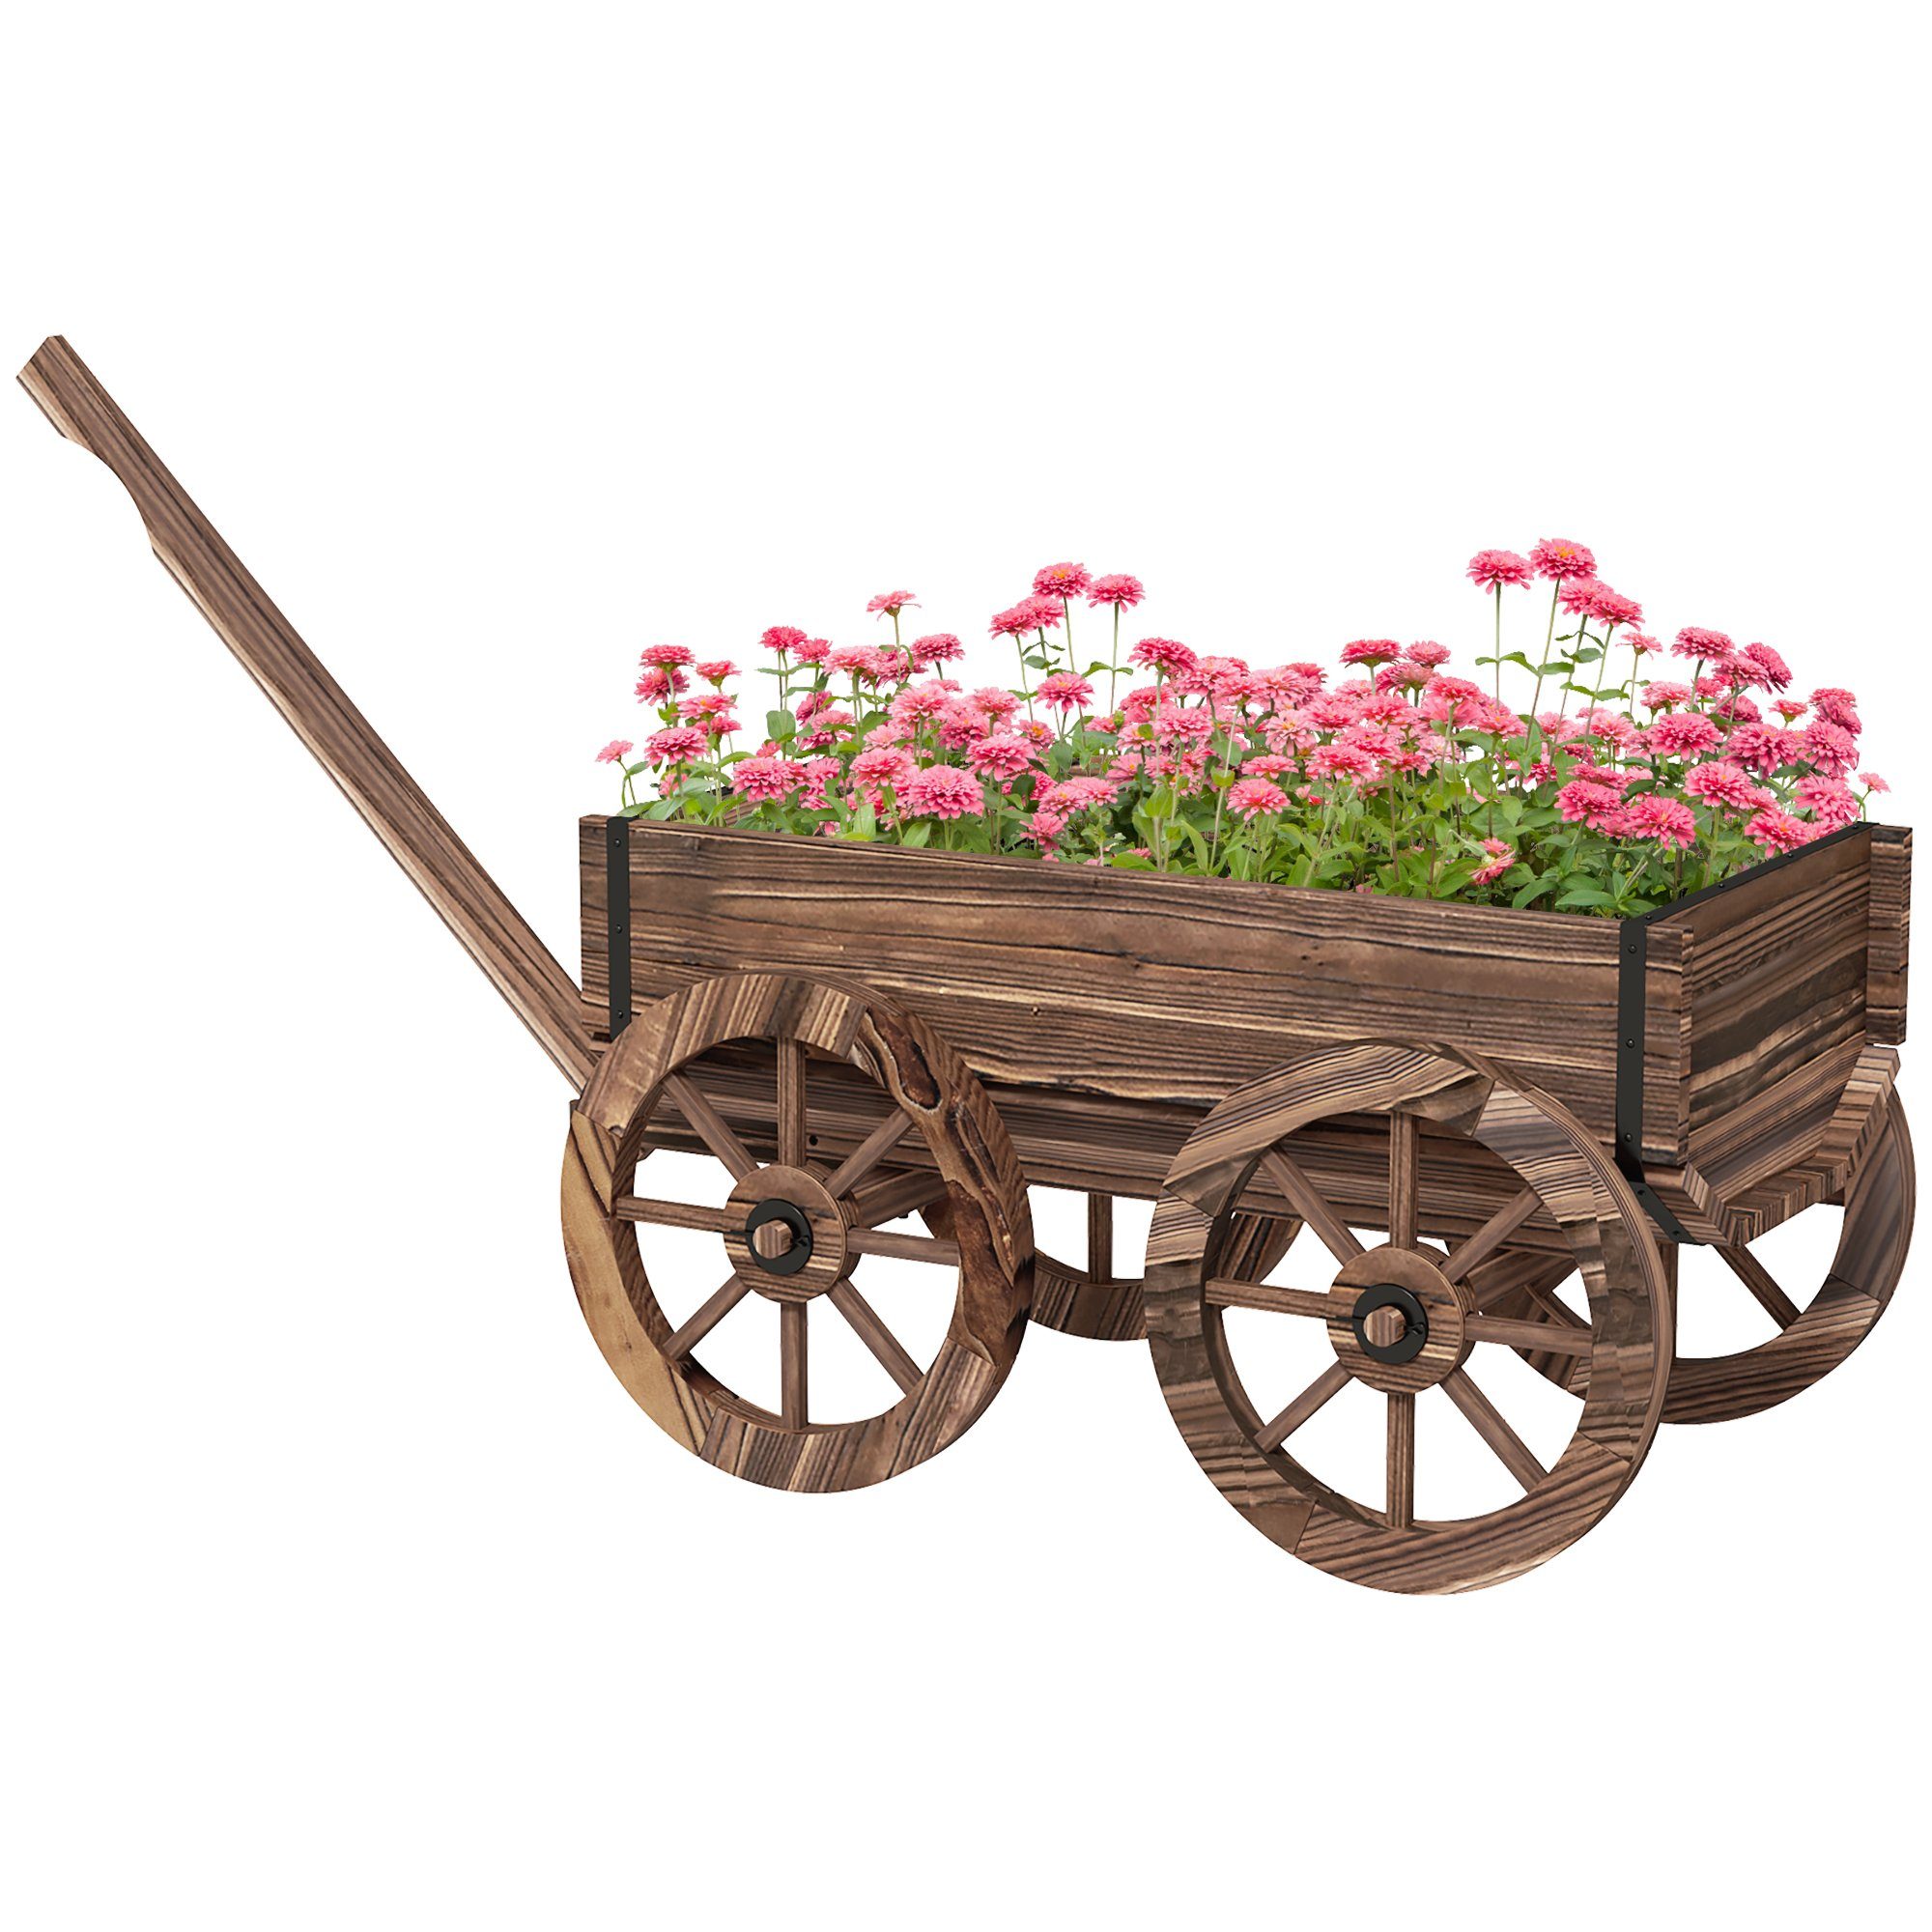 Outsunny Blumenkasten Pflanzenwagen mit Griff (Pflanzenkasten, 1 St., Підставка для квітів), für Garten, Terrasse, bis 30 kg belastbar, Verkohlt, 120 x 41 x 54 cm